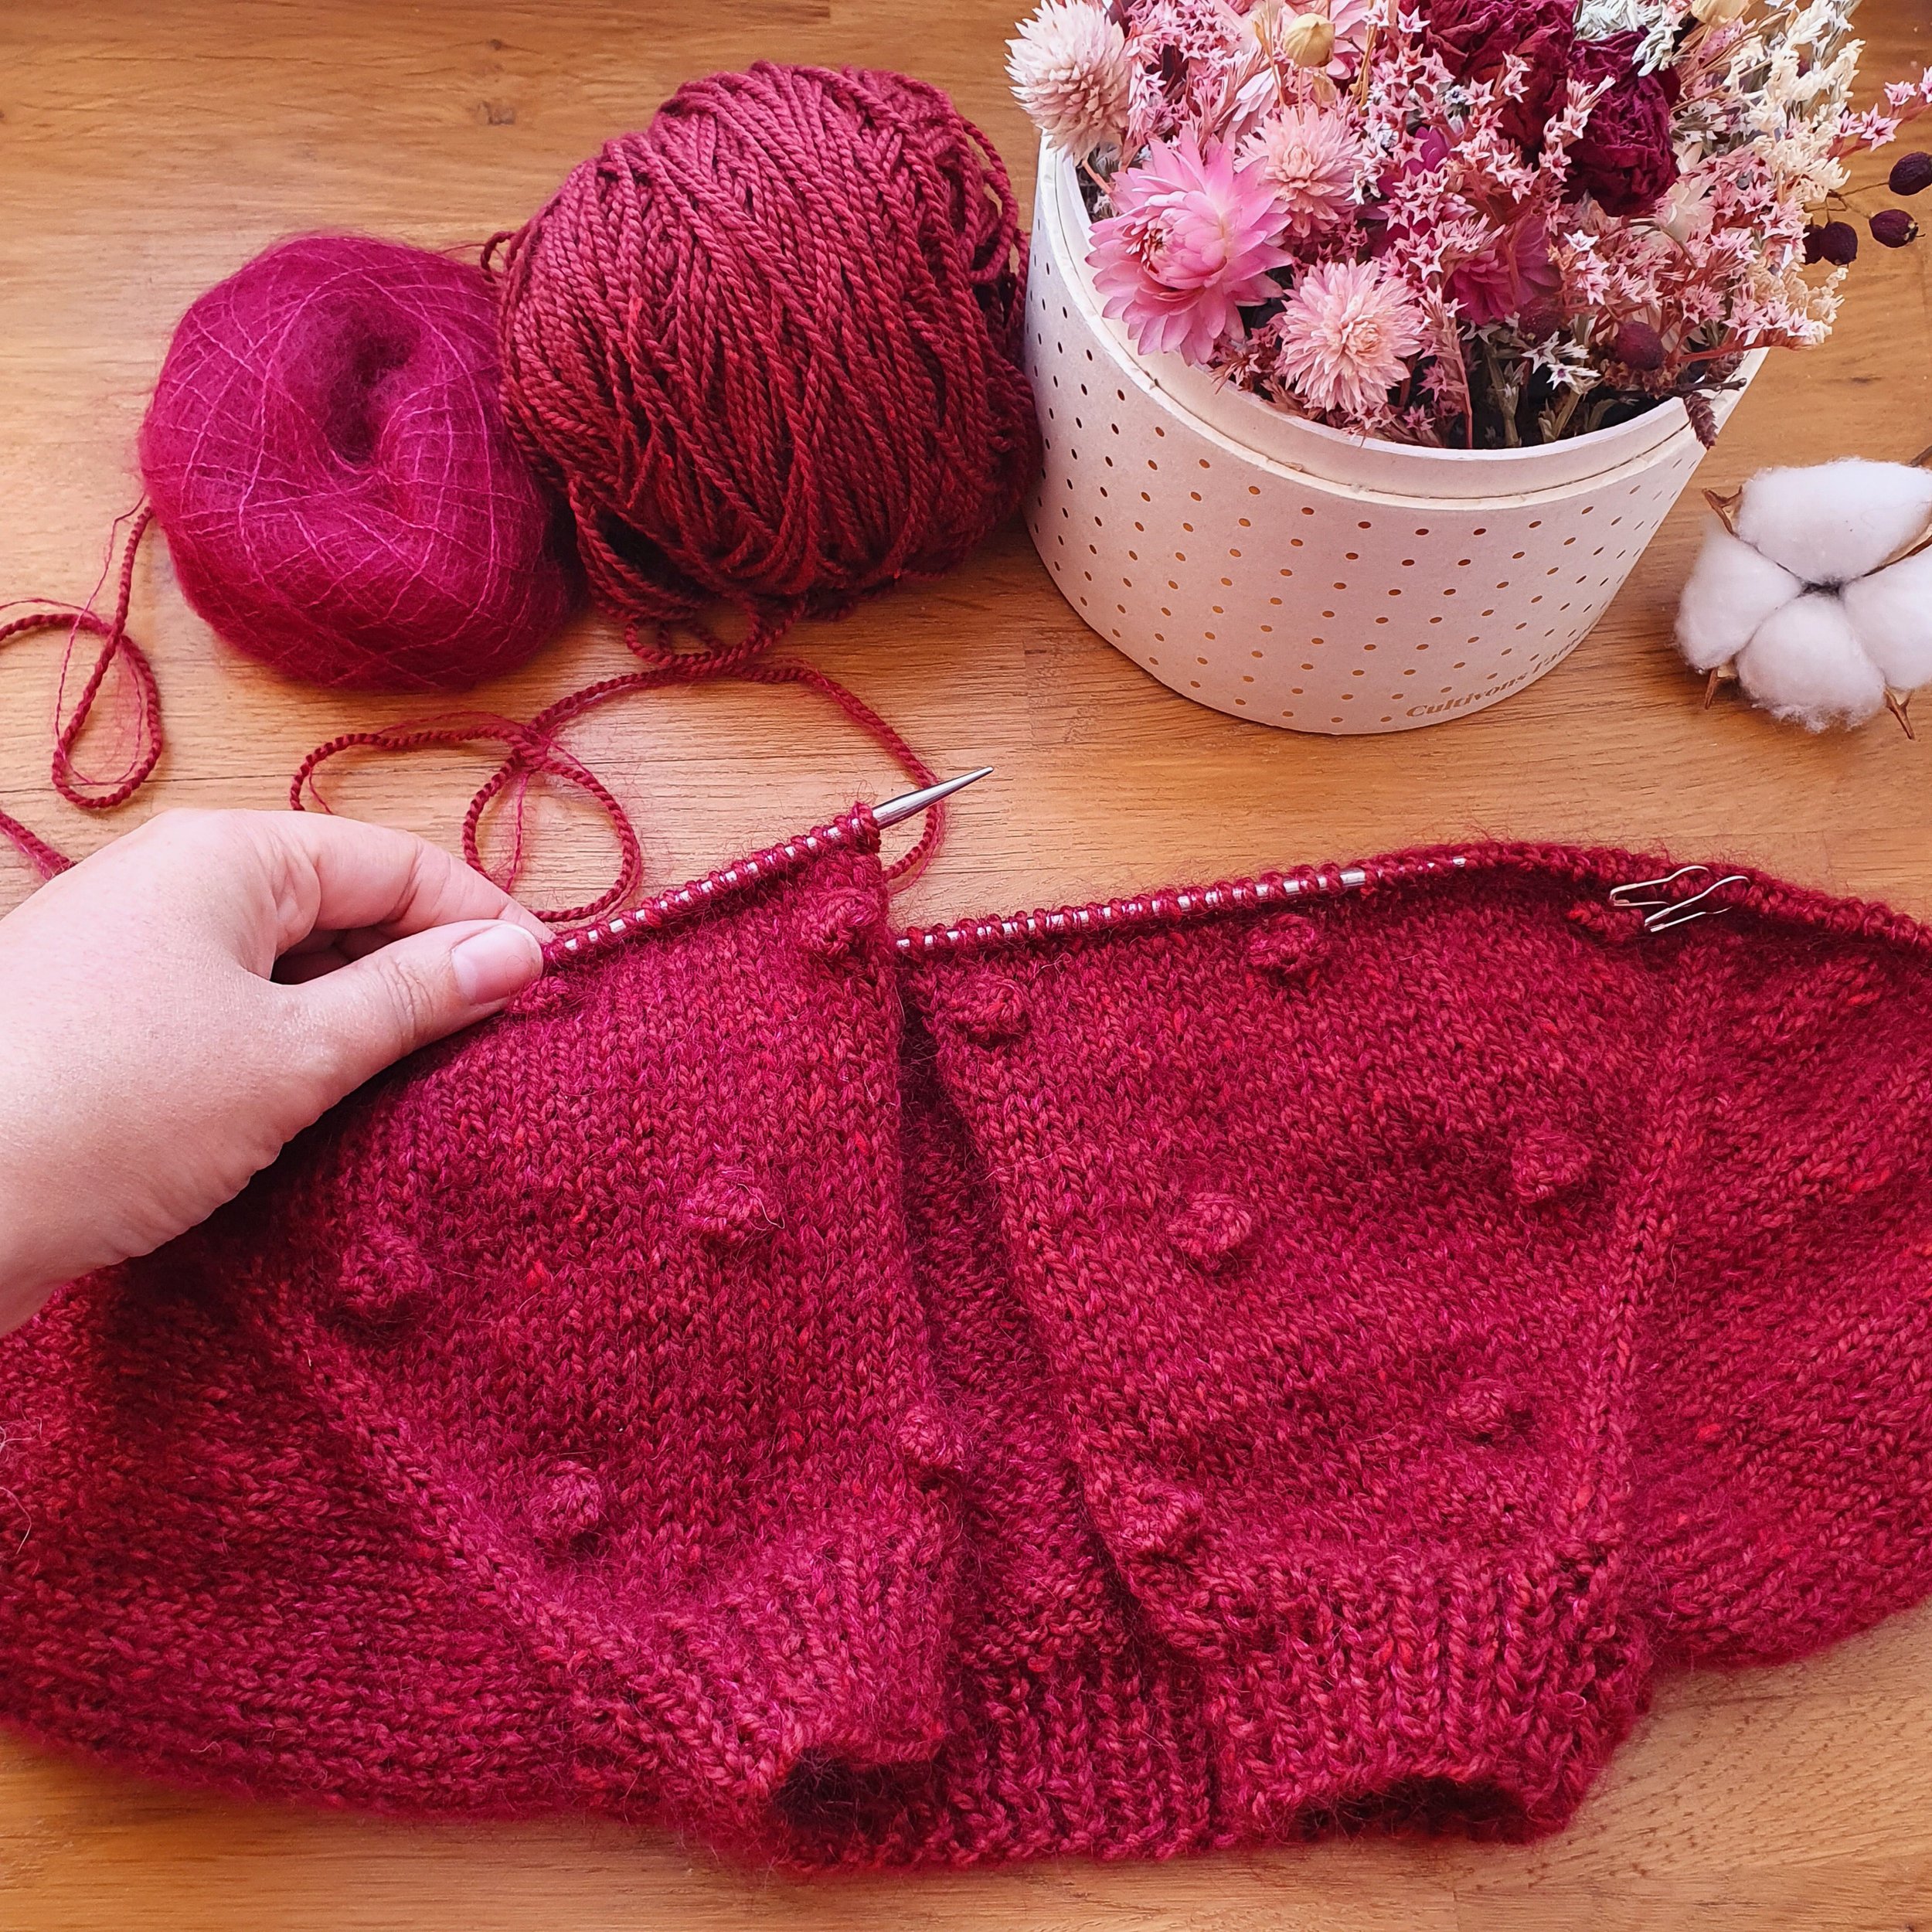 Vente en ligne d'aiguilles & accessoires pour tricot & crochet facile